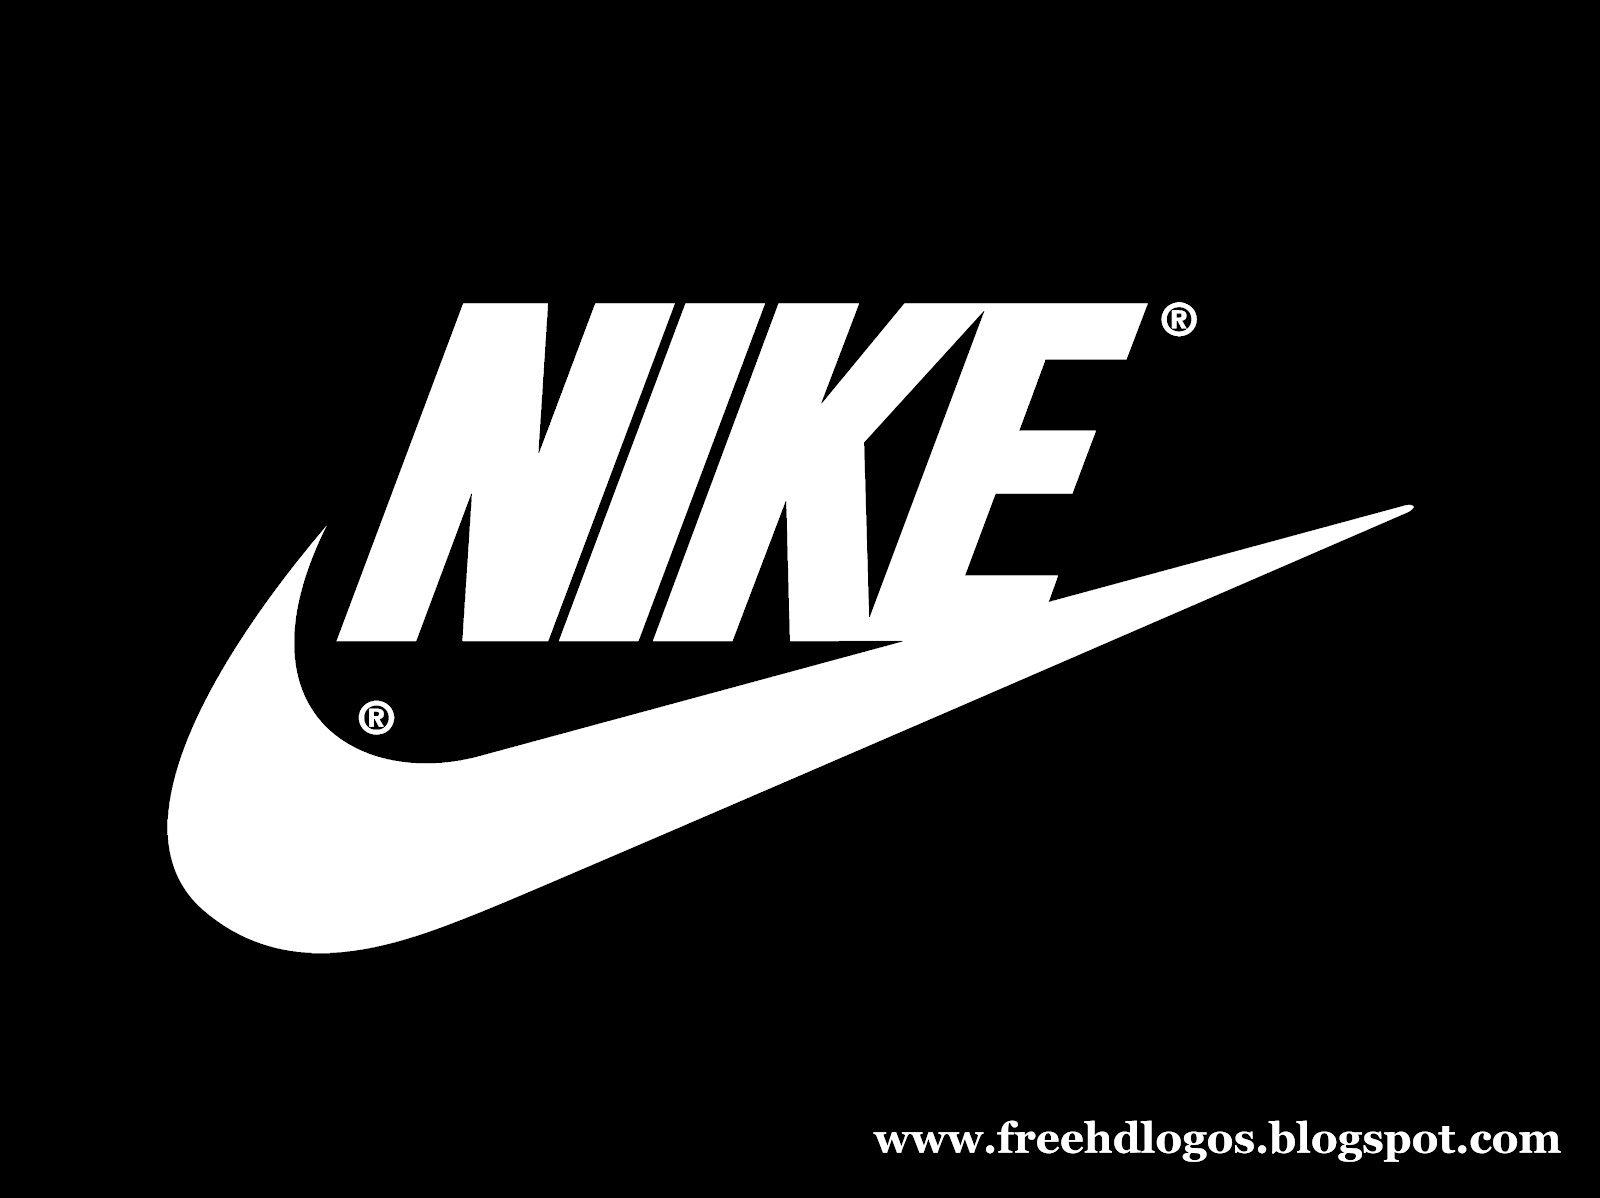 Nike+logo+dark+with+Nike+name+freehdlogos.jpg